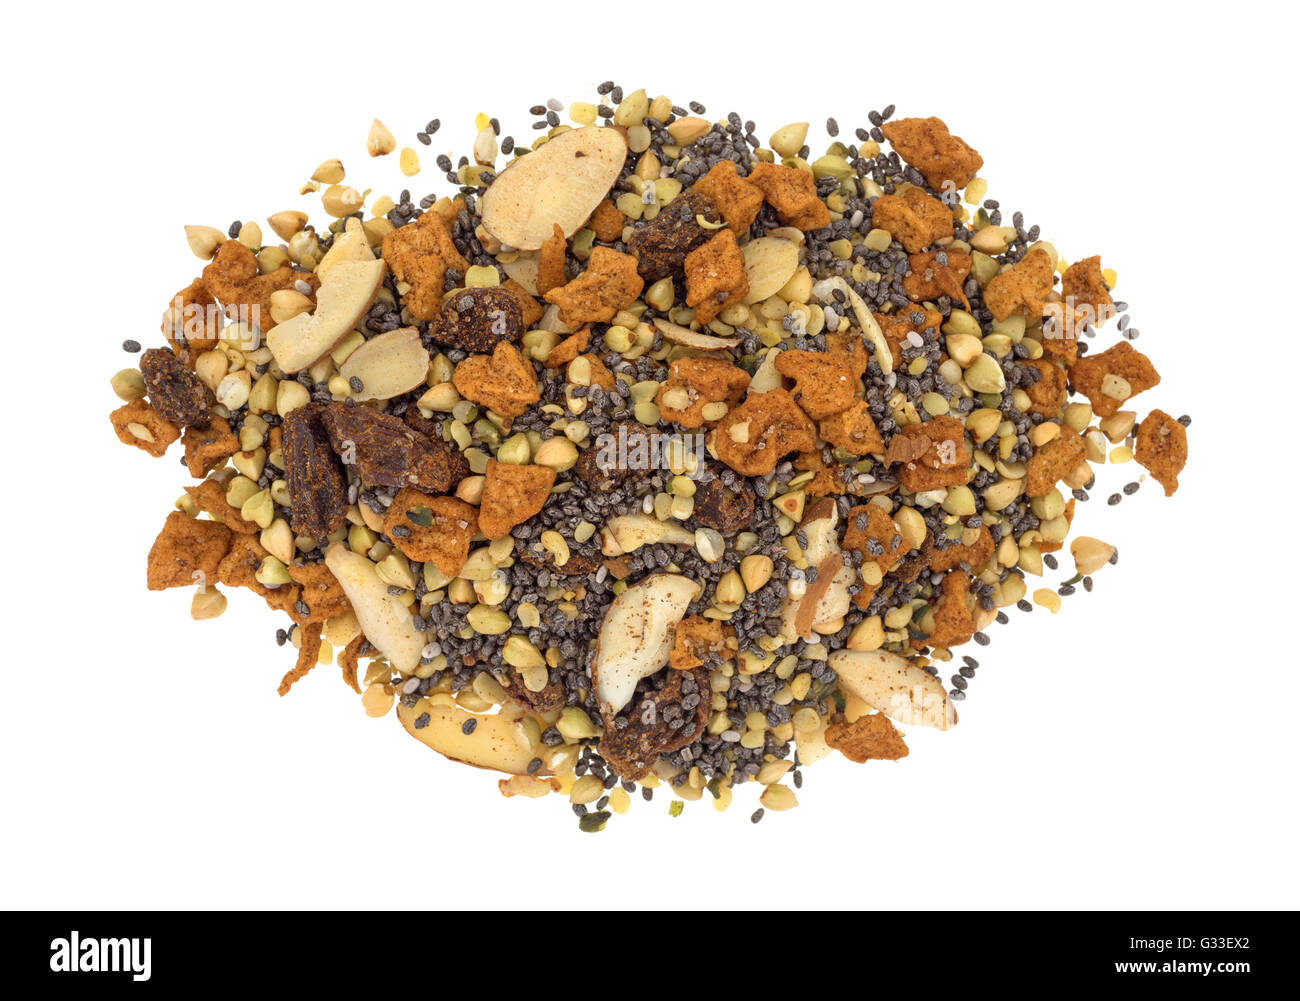 Vista dall'alto di una porzione di secco di cereali per la prima colazione consiste di chia semi, frutta a guscio e la frutta secca isolata su uno sfondo bianco. Foto Stock